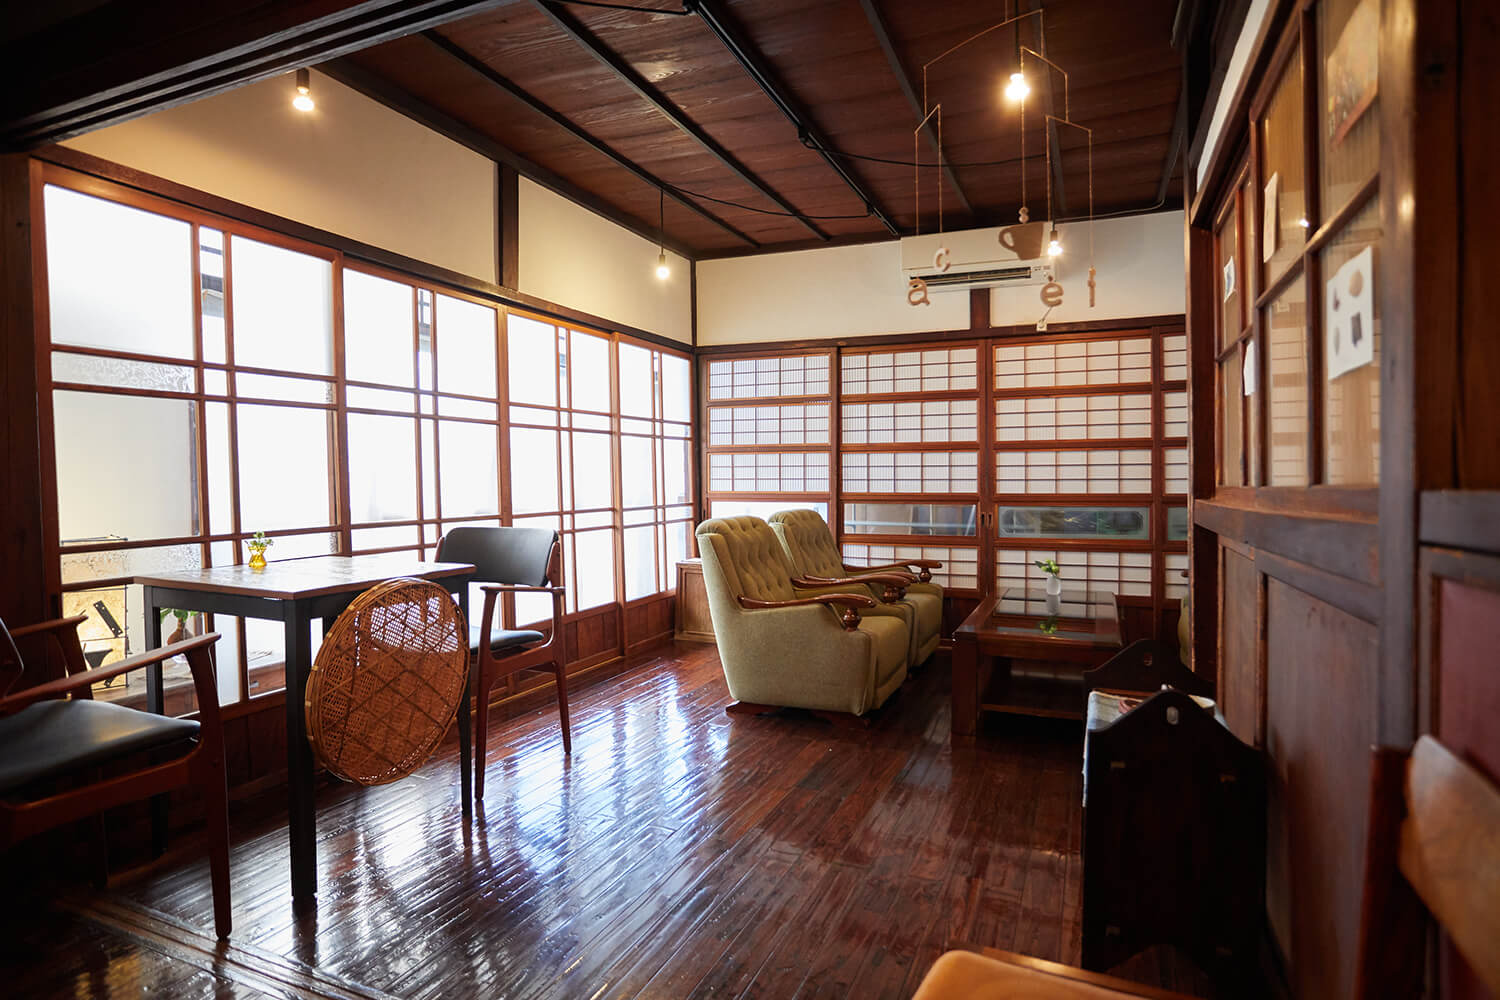 昭和風情のある店内の床はピカピカに磨かれ、店主夫妻の実家から運んだぼんぼん時計やソファーなども並ぶ